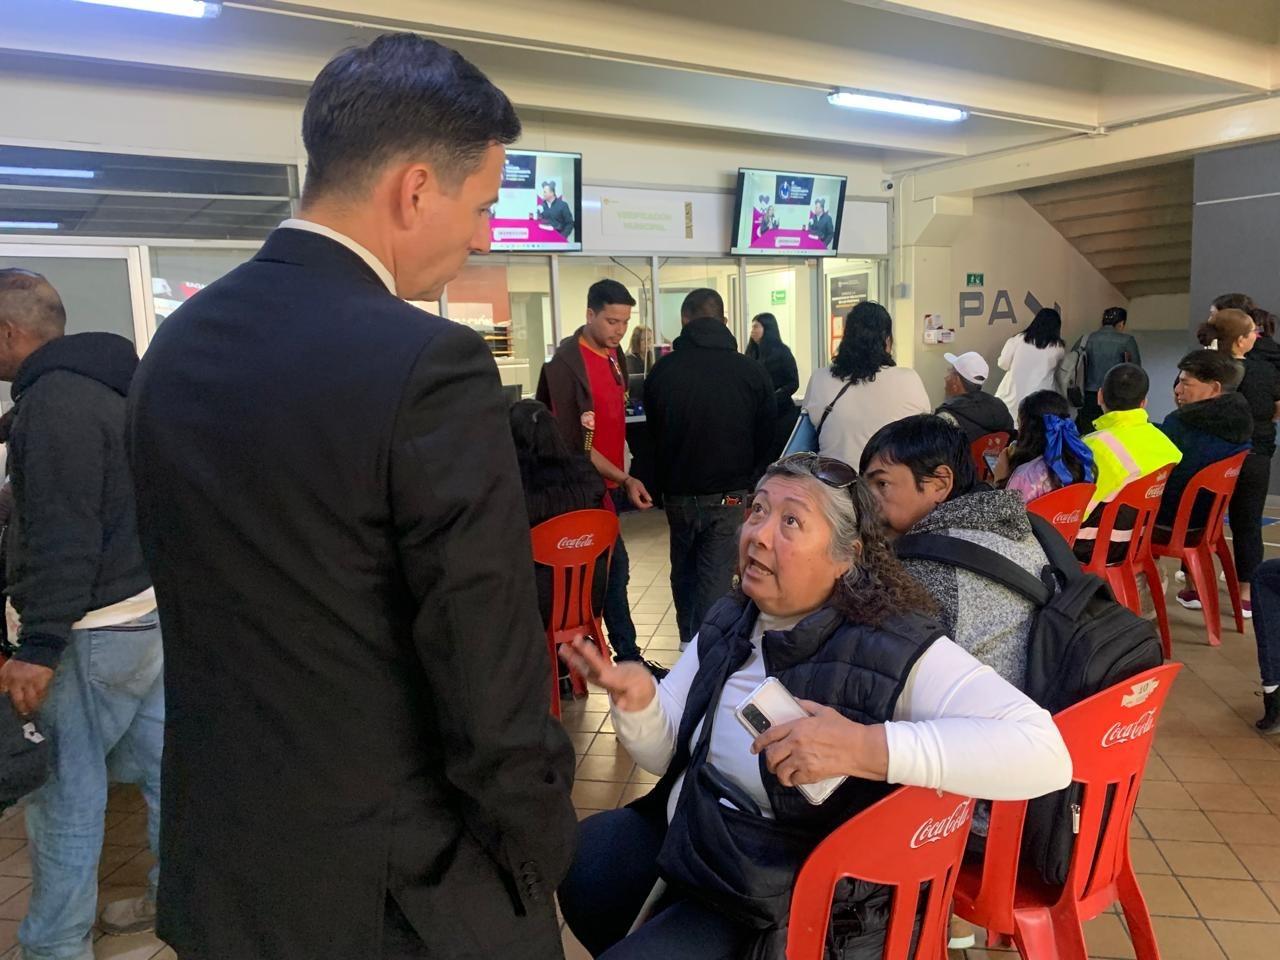 El uso de “Mula ciega”, podría inhabilitar de por vida solicitud de asilo en EU, advierte Ayuntamiento de Tijuana a migrantes